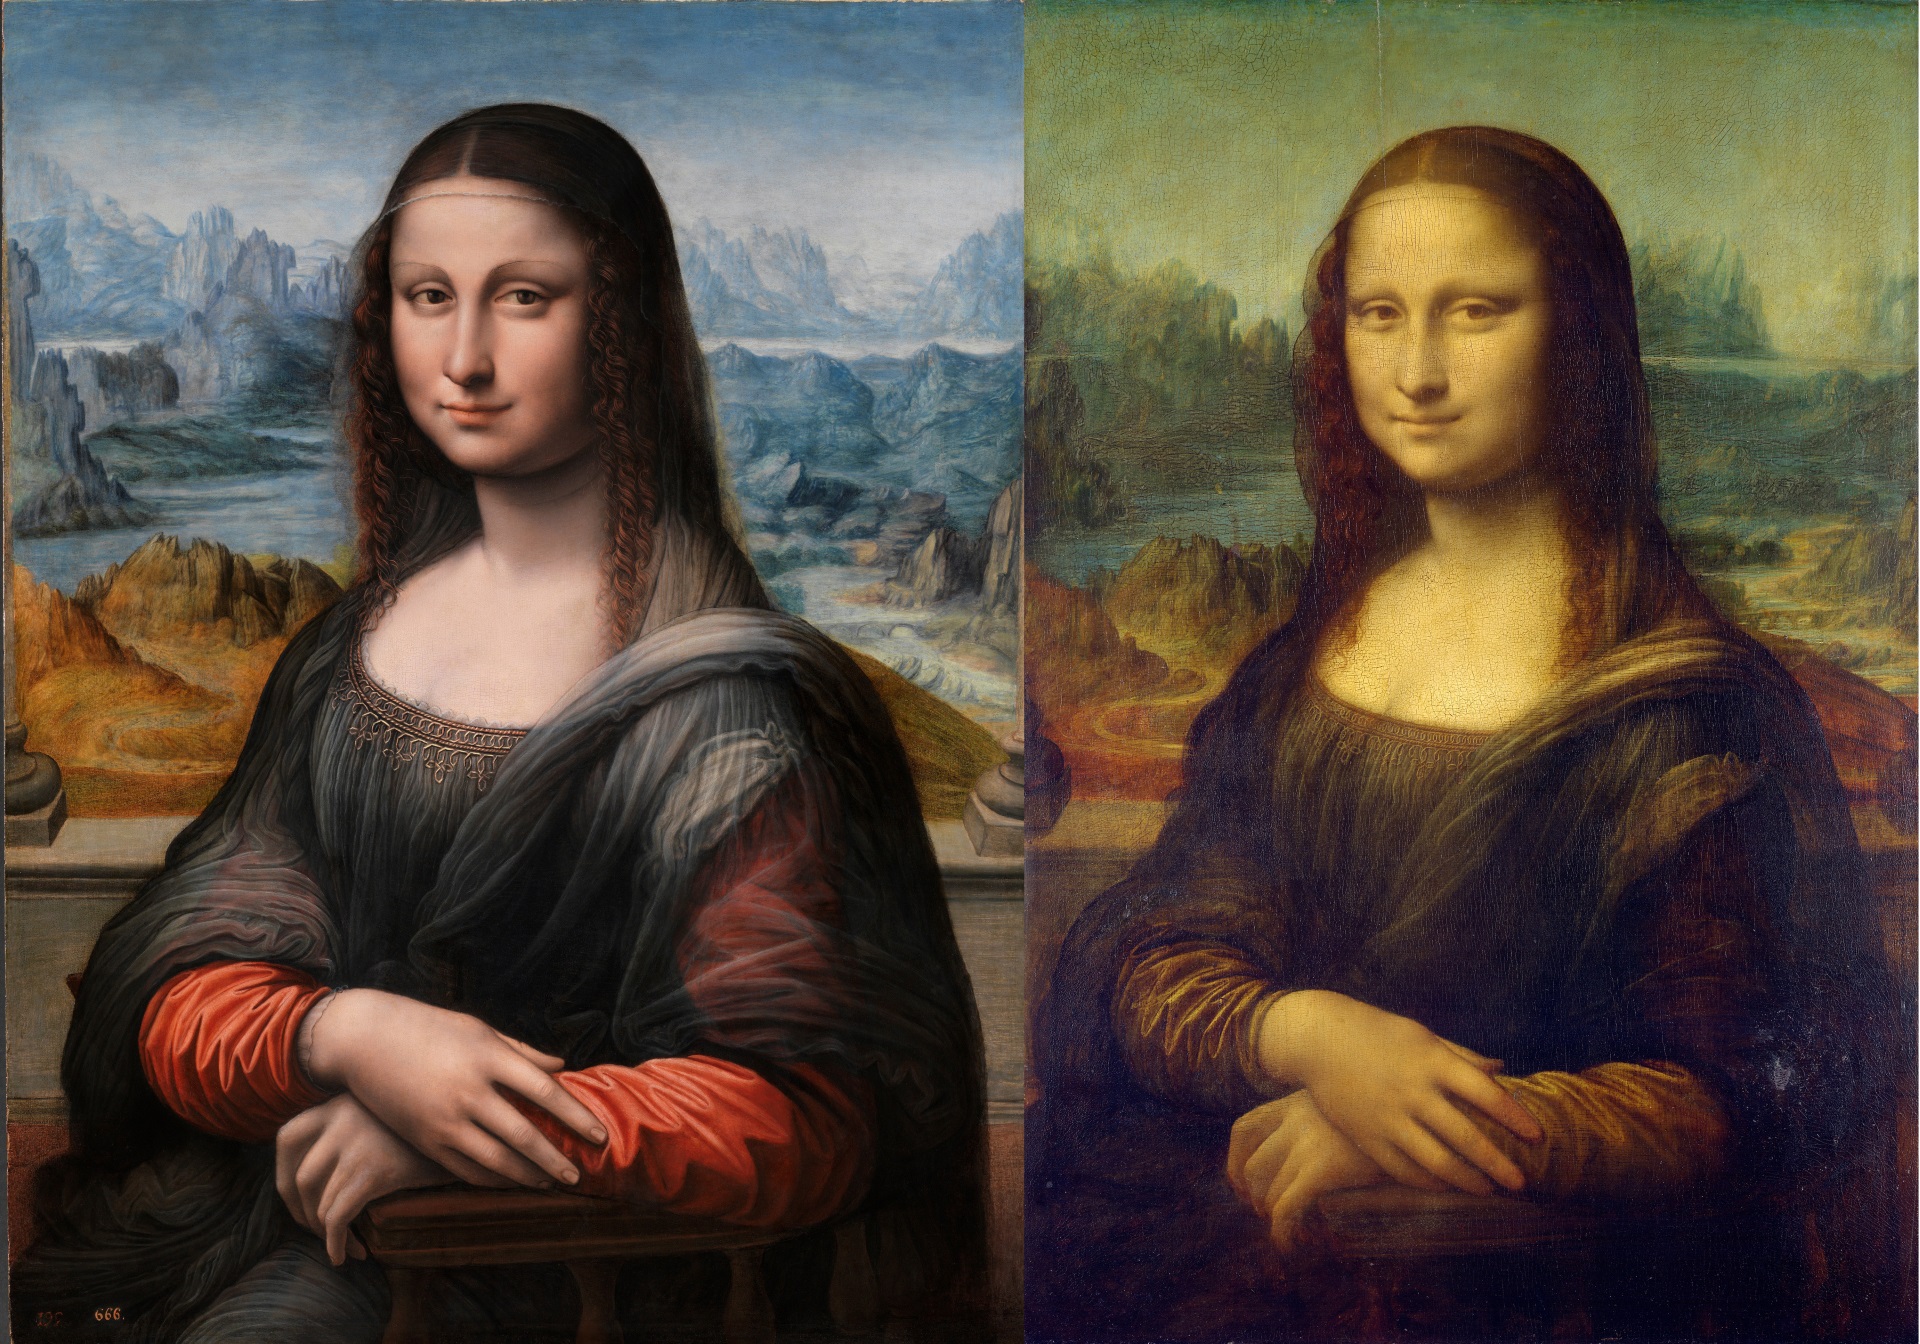 Mona Lisa side-by-side